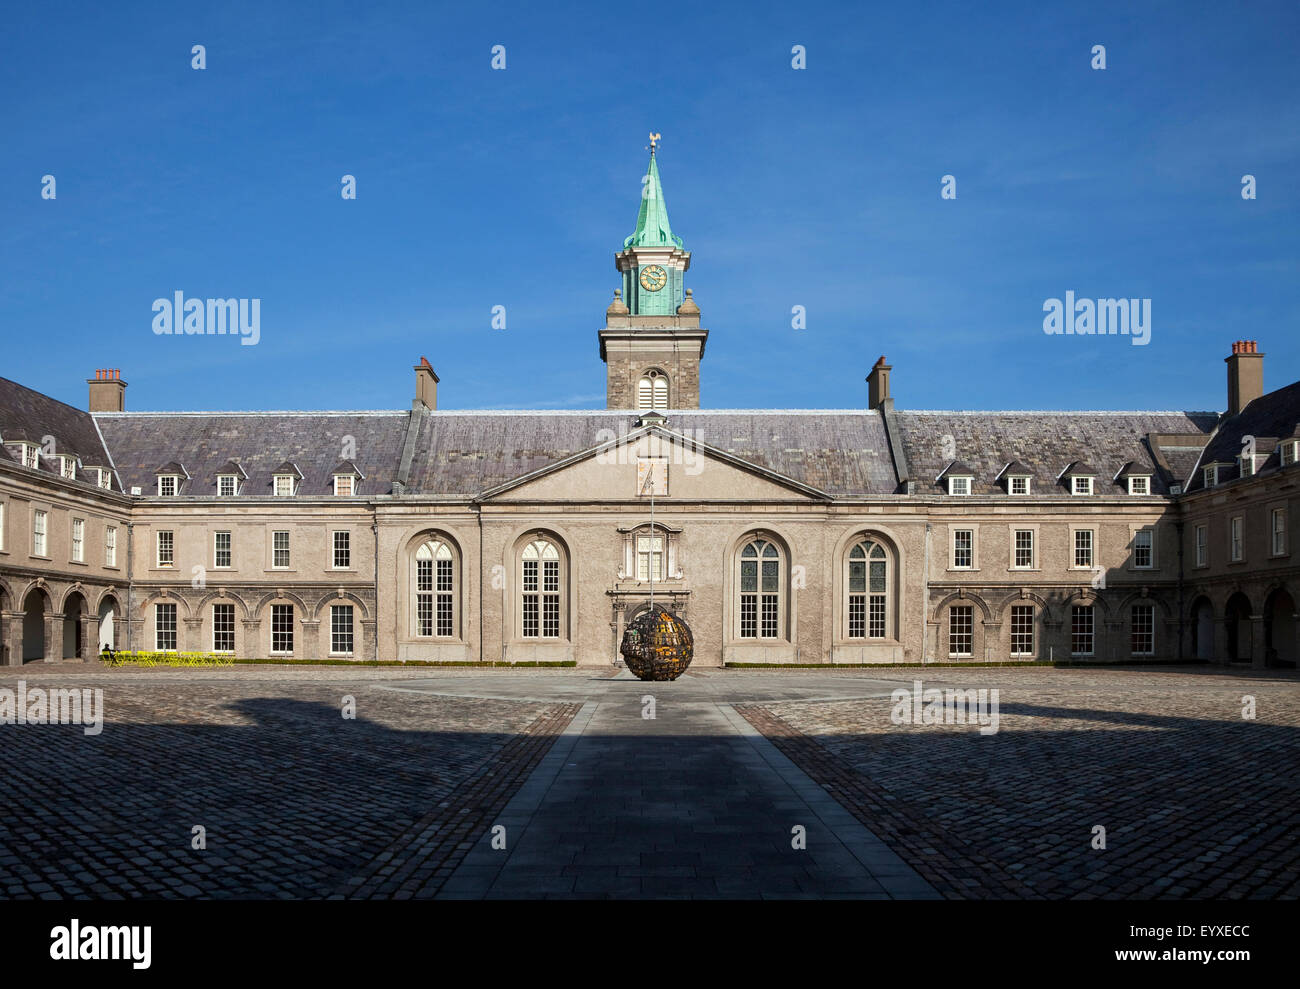 Das Royal Hospital Kilmainham, gebaut im Jahre 1684 von Sir William Robinson, jetzt das Museum der modernen Kunst (IMMA), Kilmainham, Stadt Dublin, Irland Stockfoto